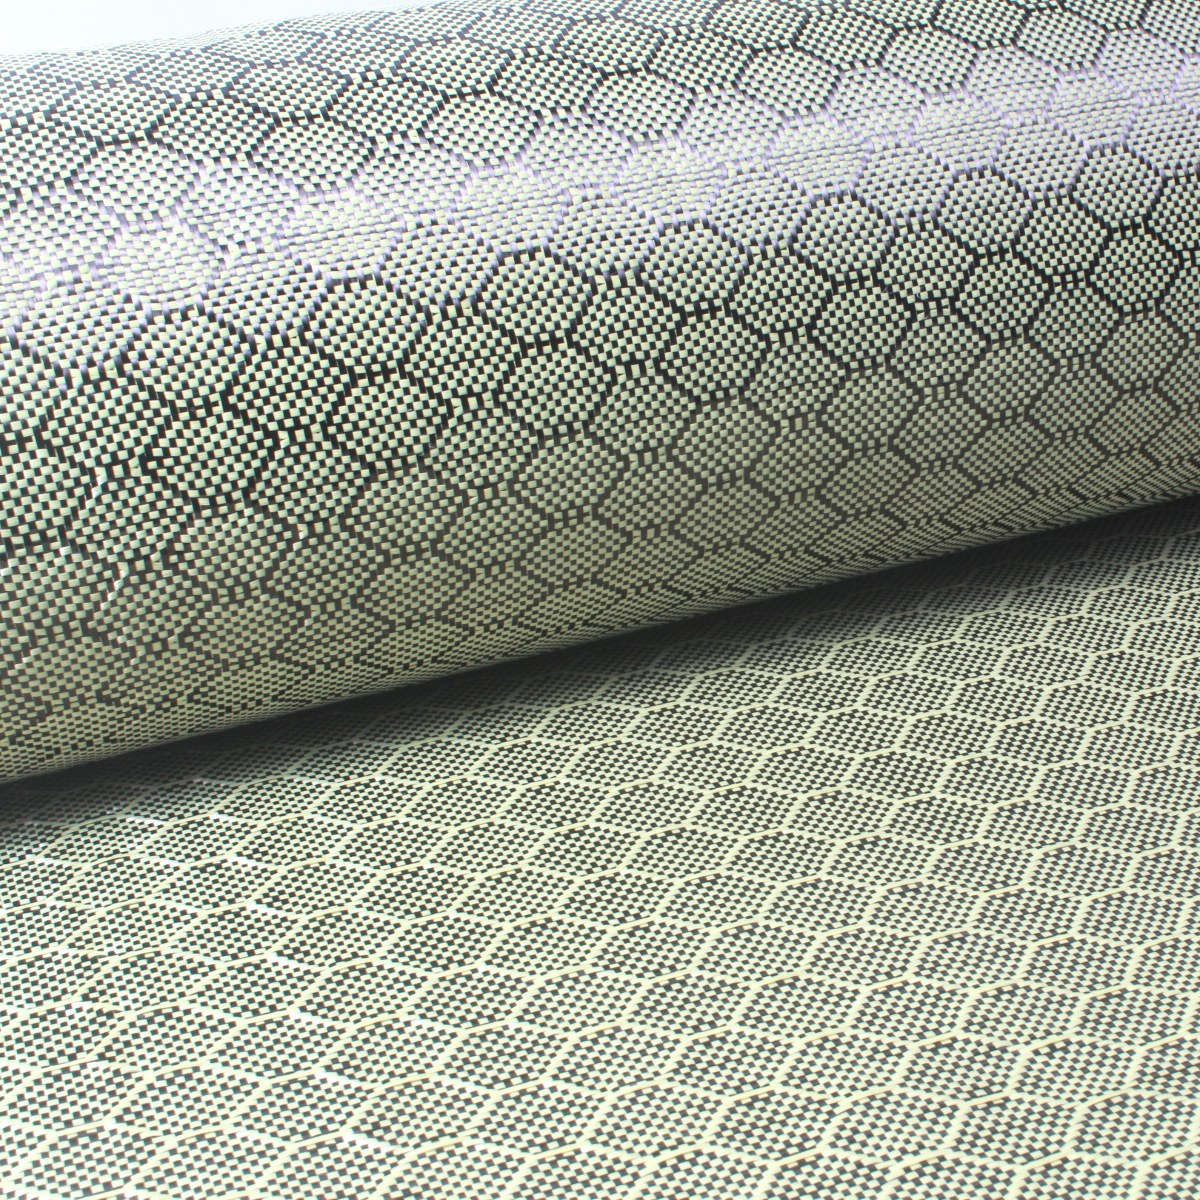 Verstärktes 3K Honeycomb Hexagonal Aramid Kohlefasergewebe für Autoteile